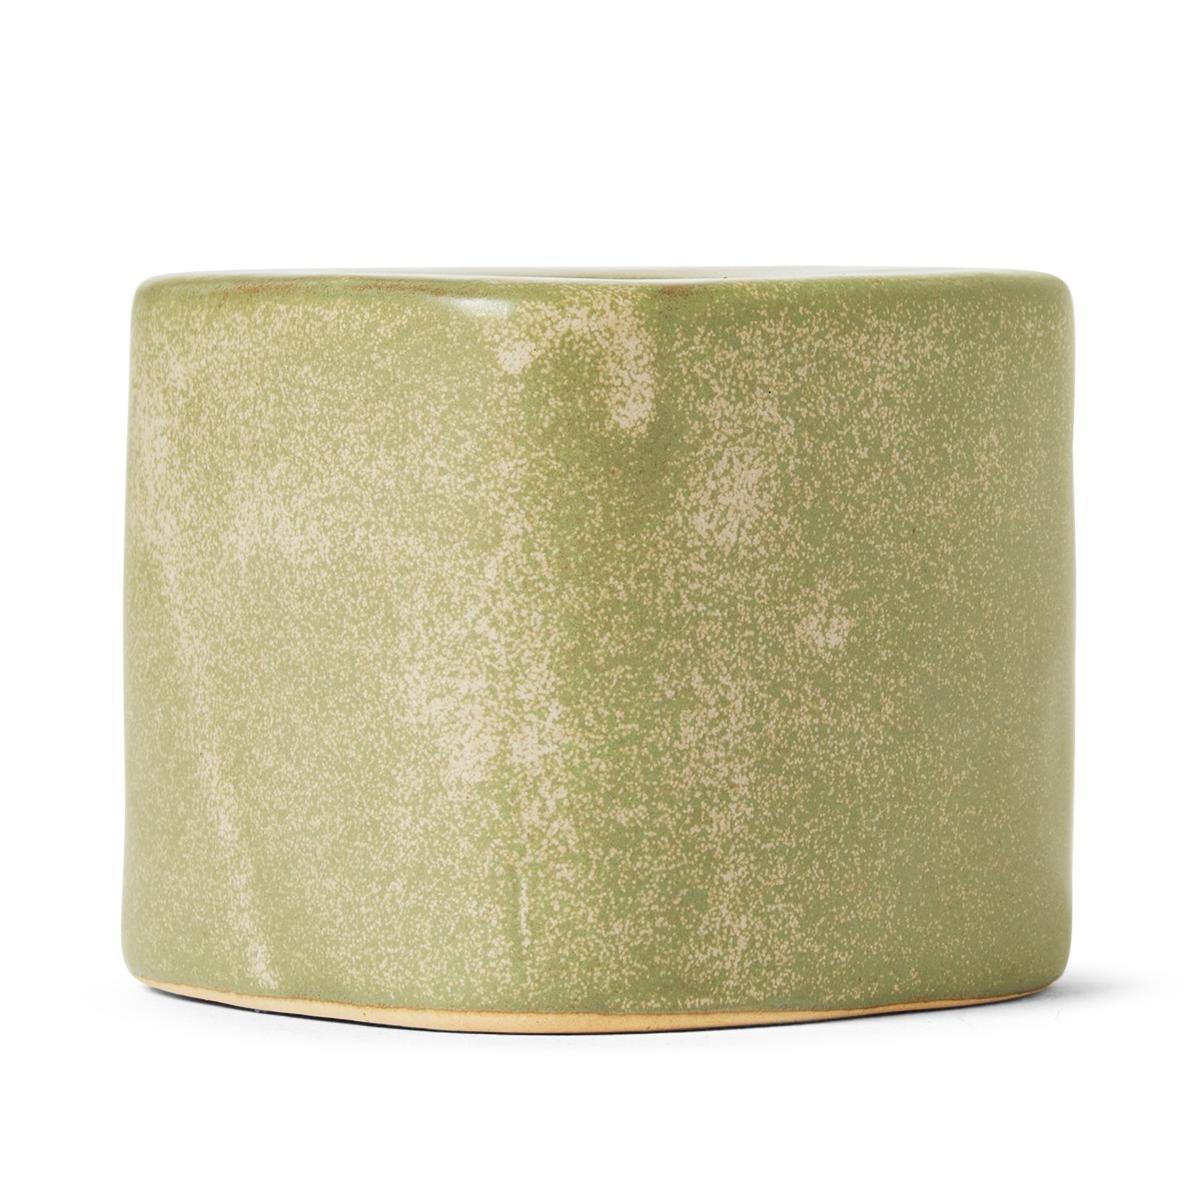 Olive green ceramic candle holder